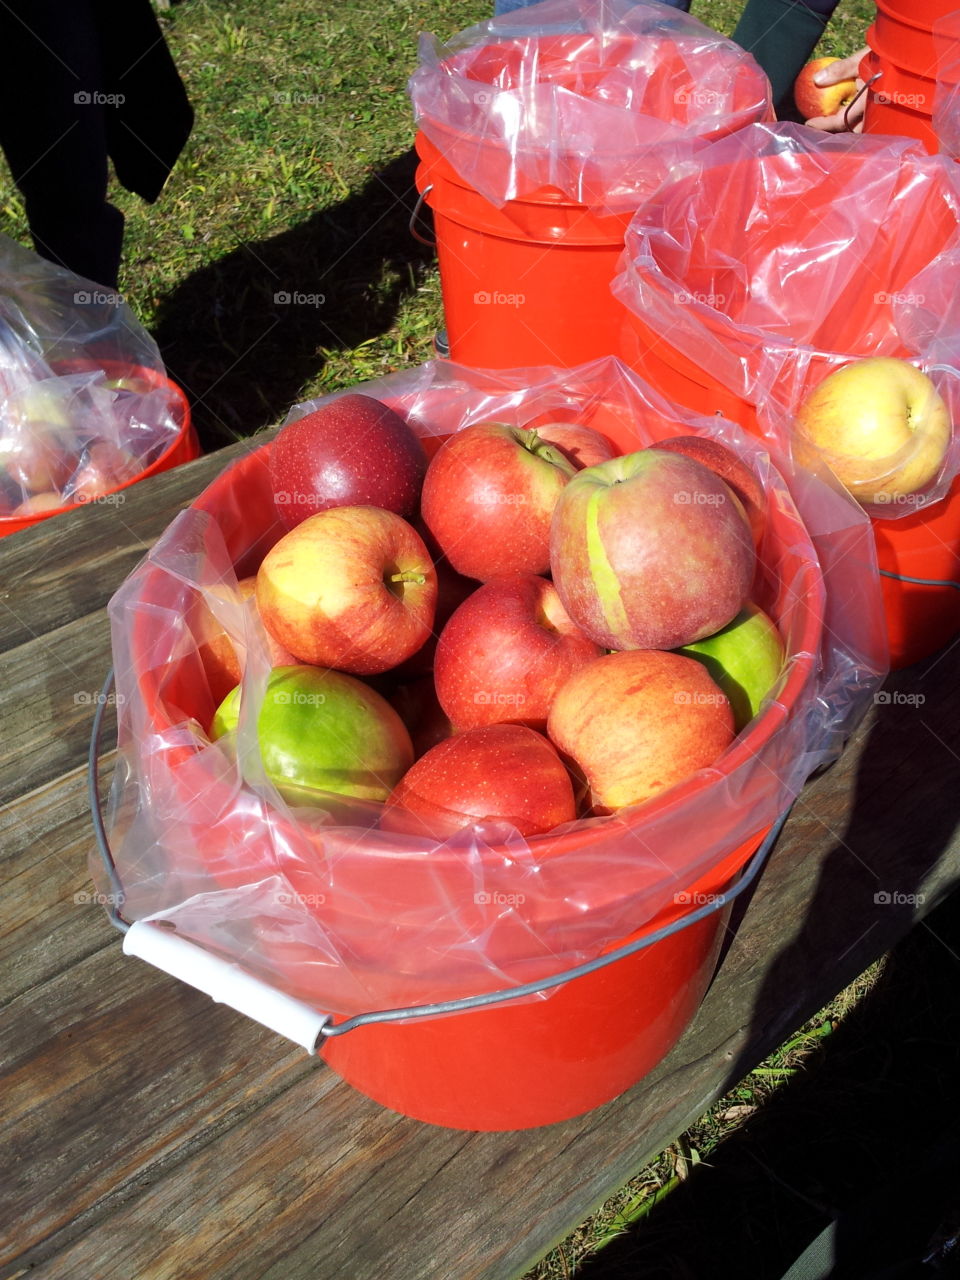 Bucket of apples 